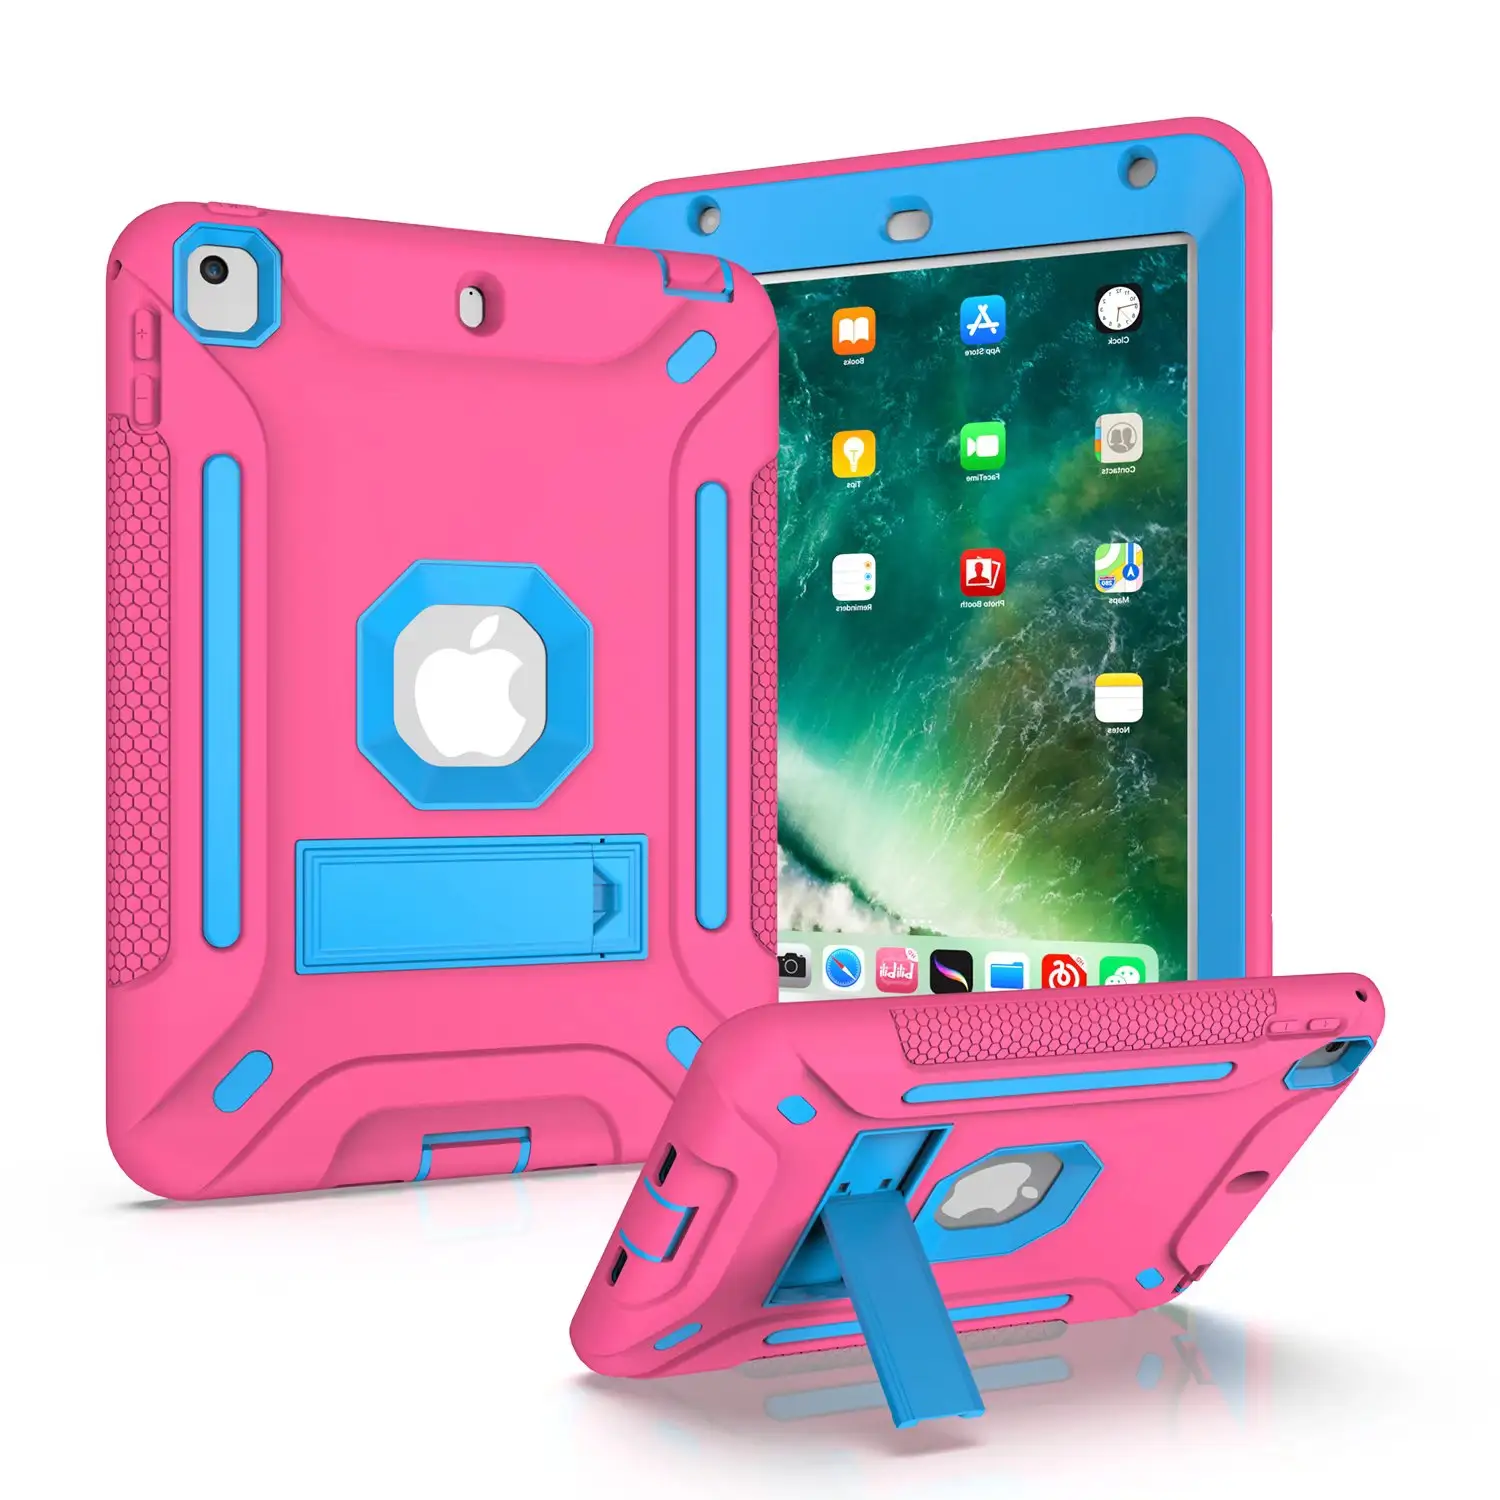 Funda protectora de alta resistencia a prueba de golpes para iPad Mini 4/Mini 5, 7,9 pulgadas, armadura híbrida resistente, carcasa con soporte incorporado para tableta